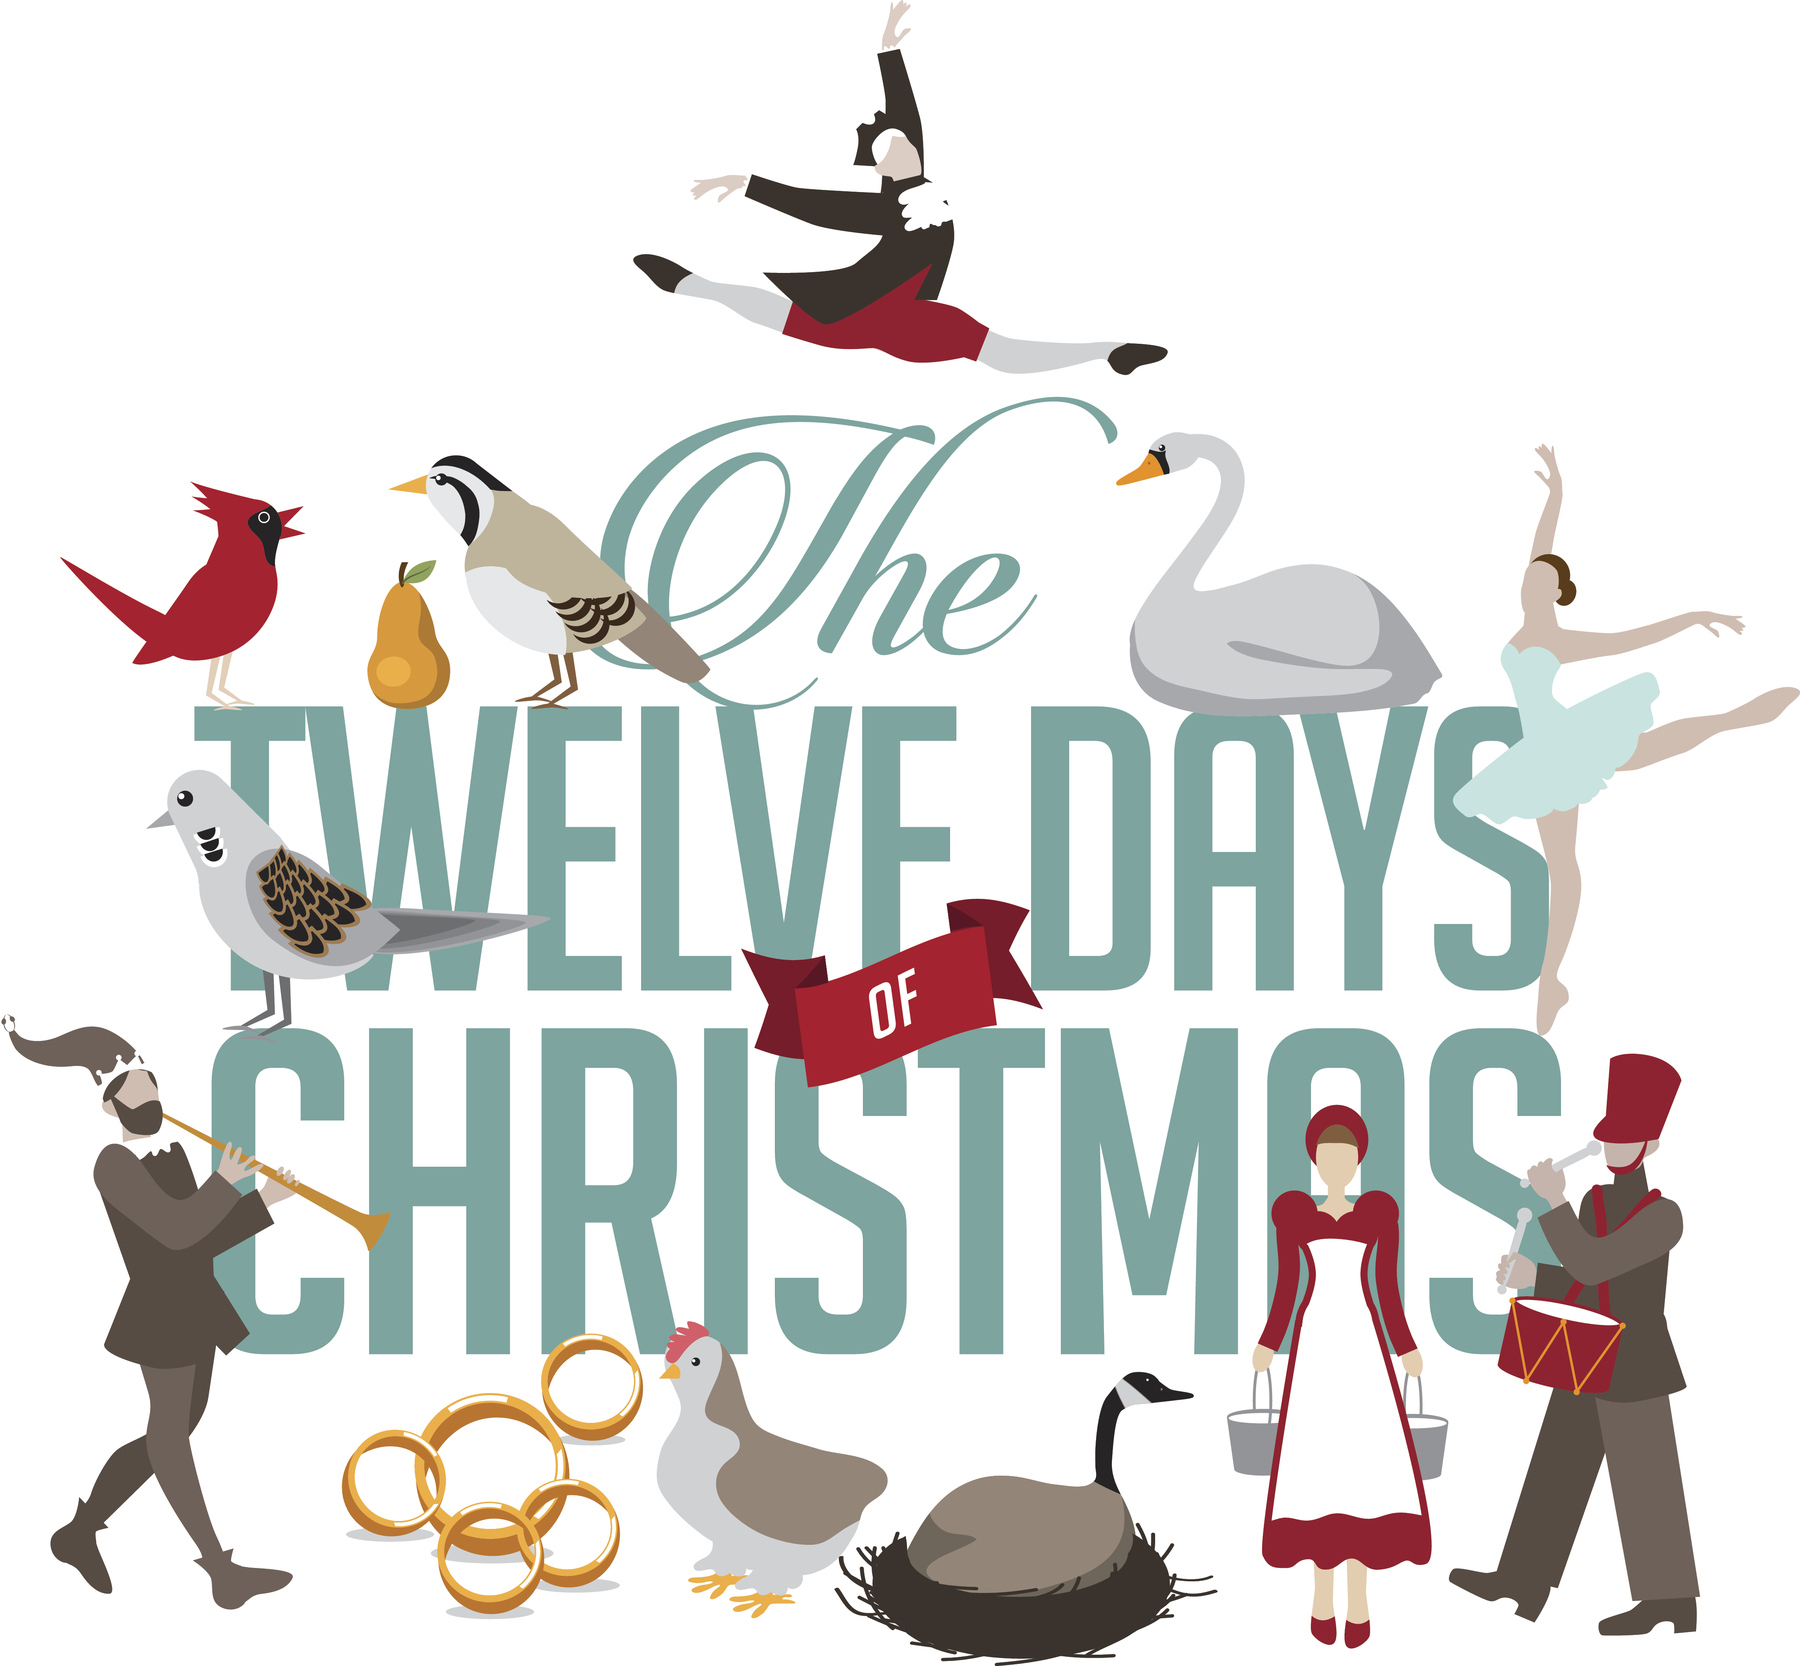 The Twelve Days of Christmas by N.R. Walker